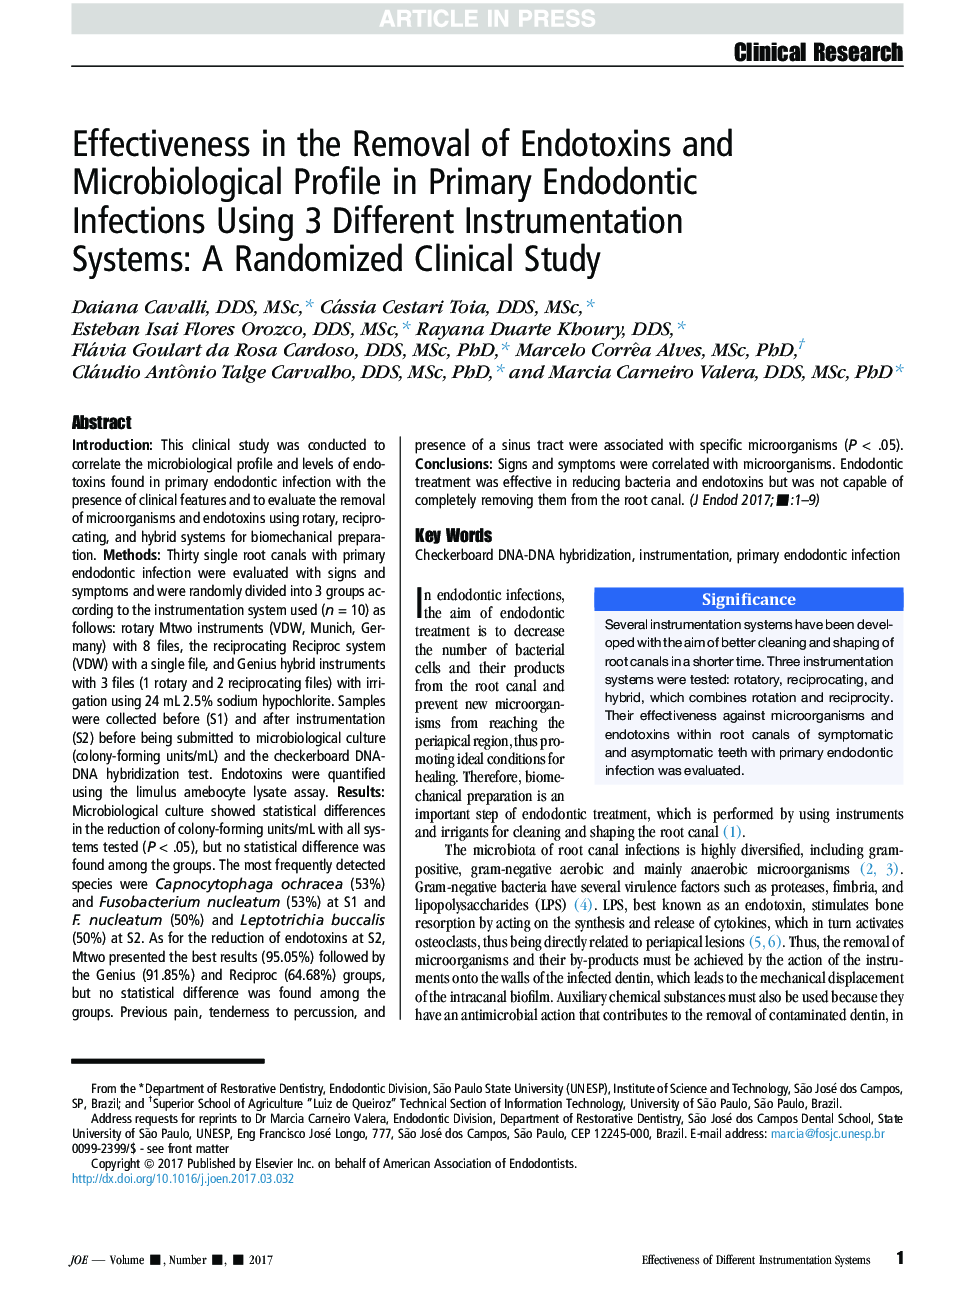 اثربخشی در حذف اندوتوکسین ها و مشخصات میکروبیولوژیکی در عفونت های اندودنتیتیکس اولیه با استفاده از 3 سیستم مختلف ابزارآلات: یک مطالعه بالینی تصادفی 